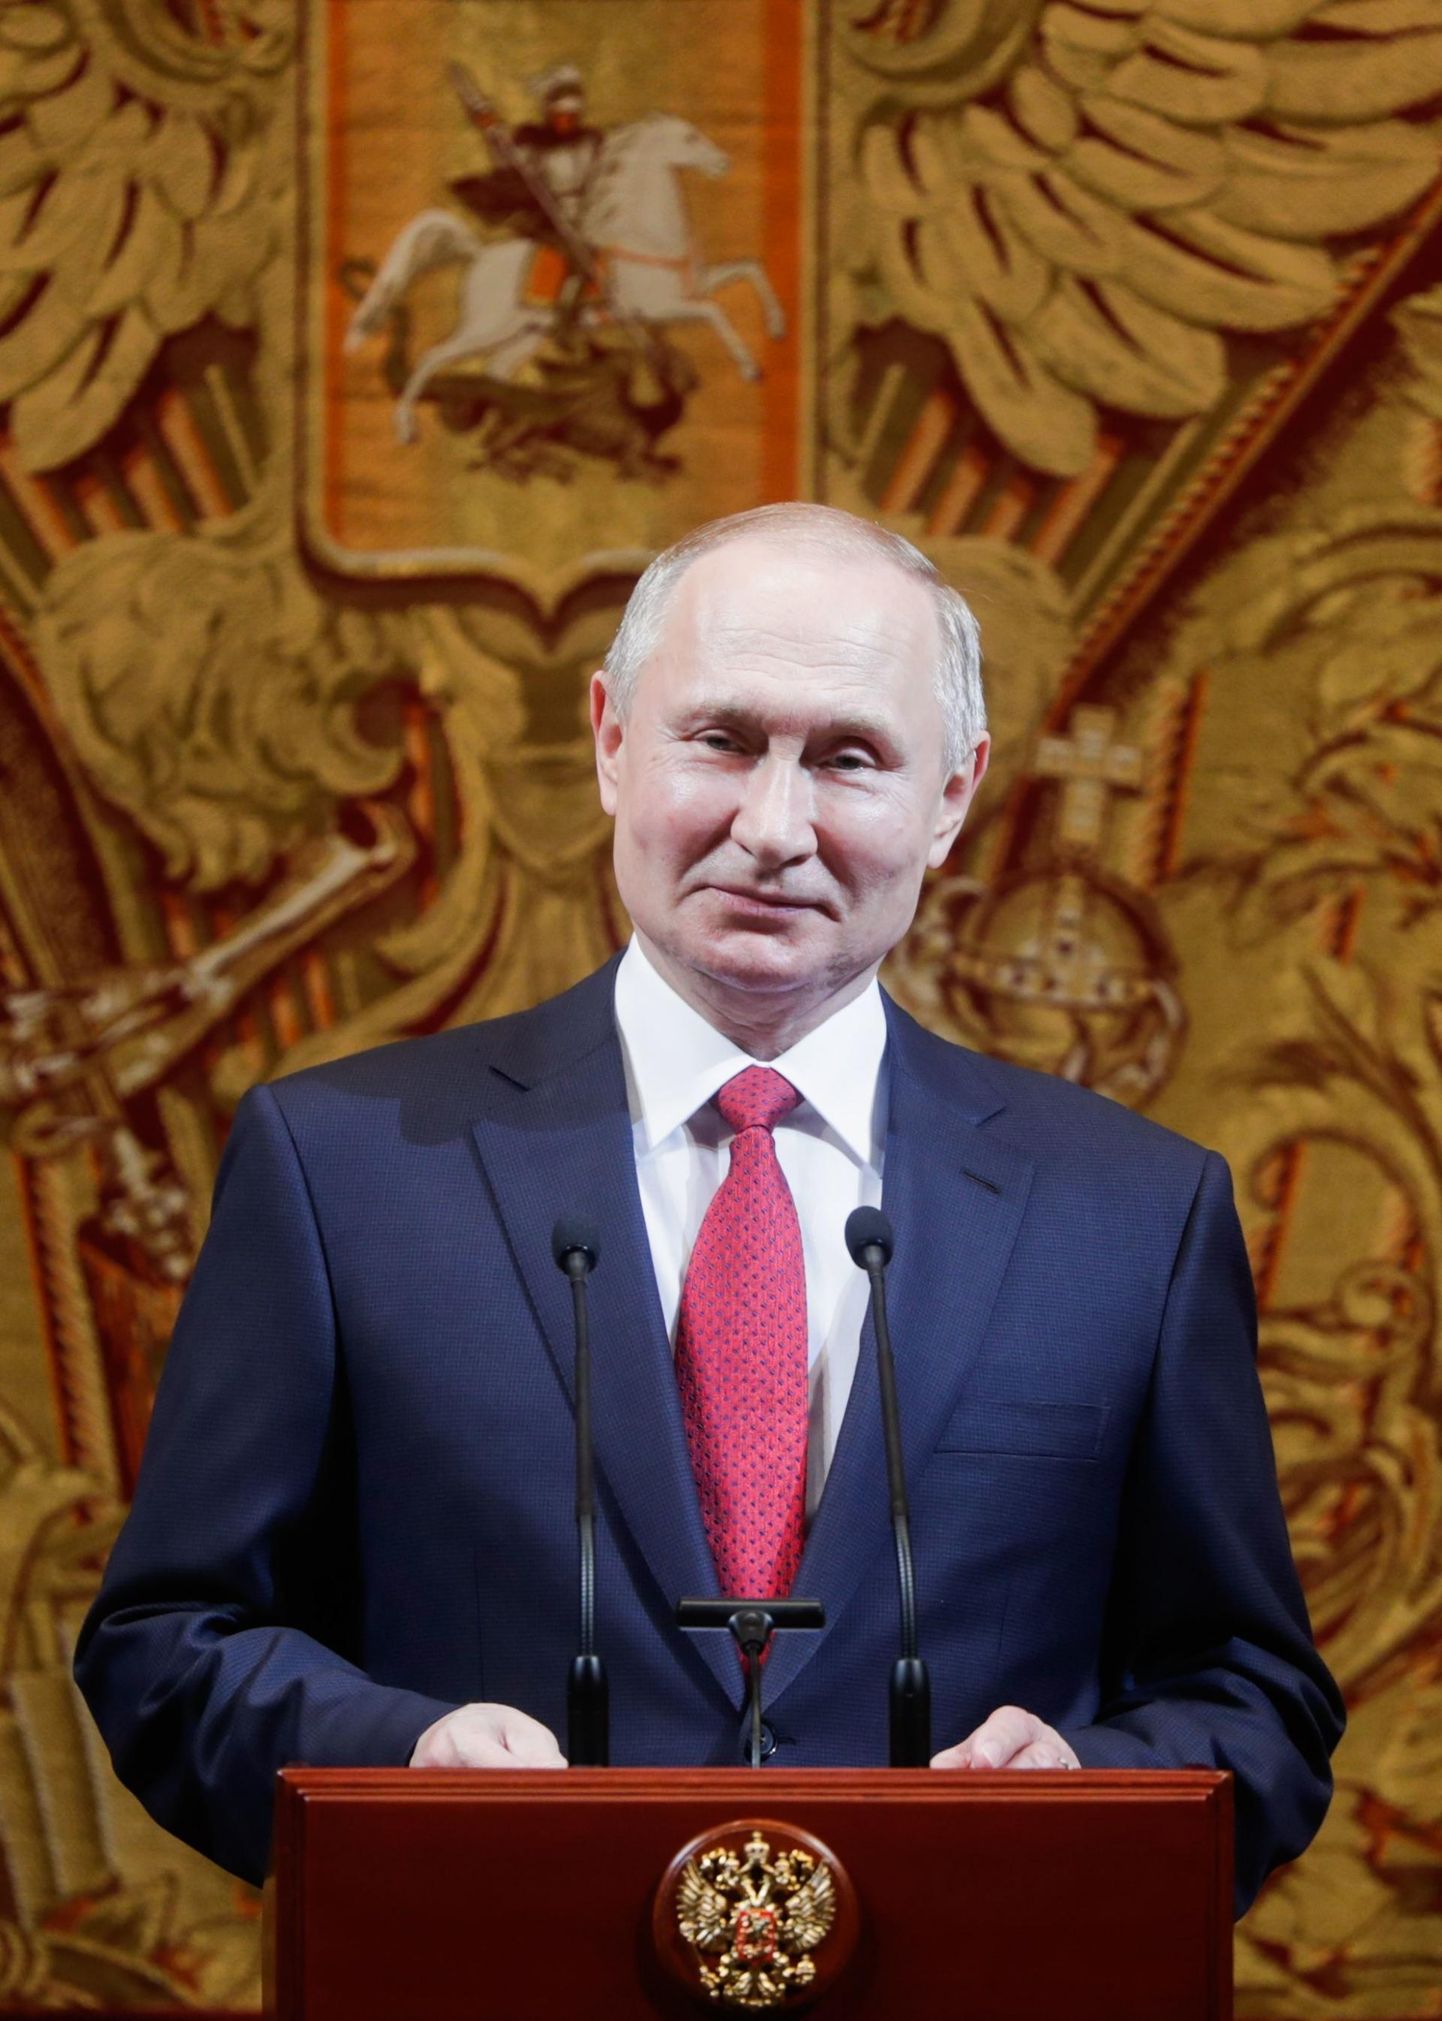 Venemaa eksperdid on veendunud, et Vladimir Putin jääb mingis vormis võimule ka pärast seda, kui tema ametiaeg presidendina 2024. aastal lõppeb. FOTO: Mikhail Metzel/tass/scanpix